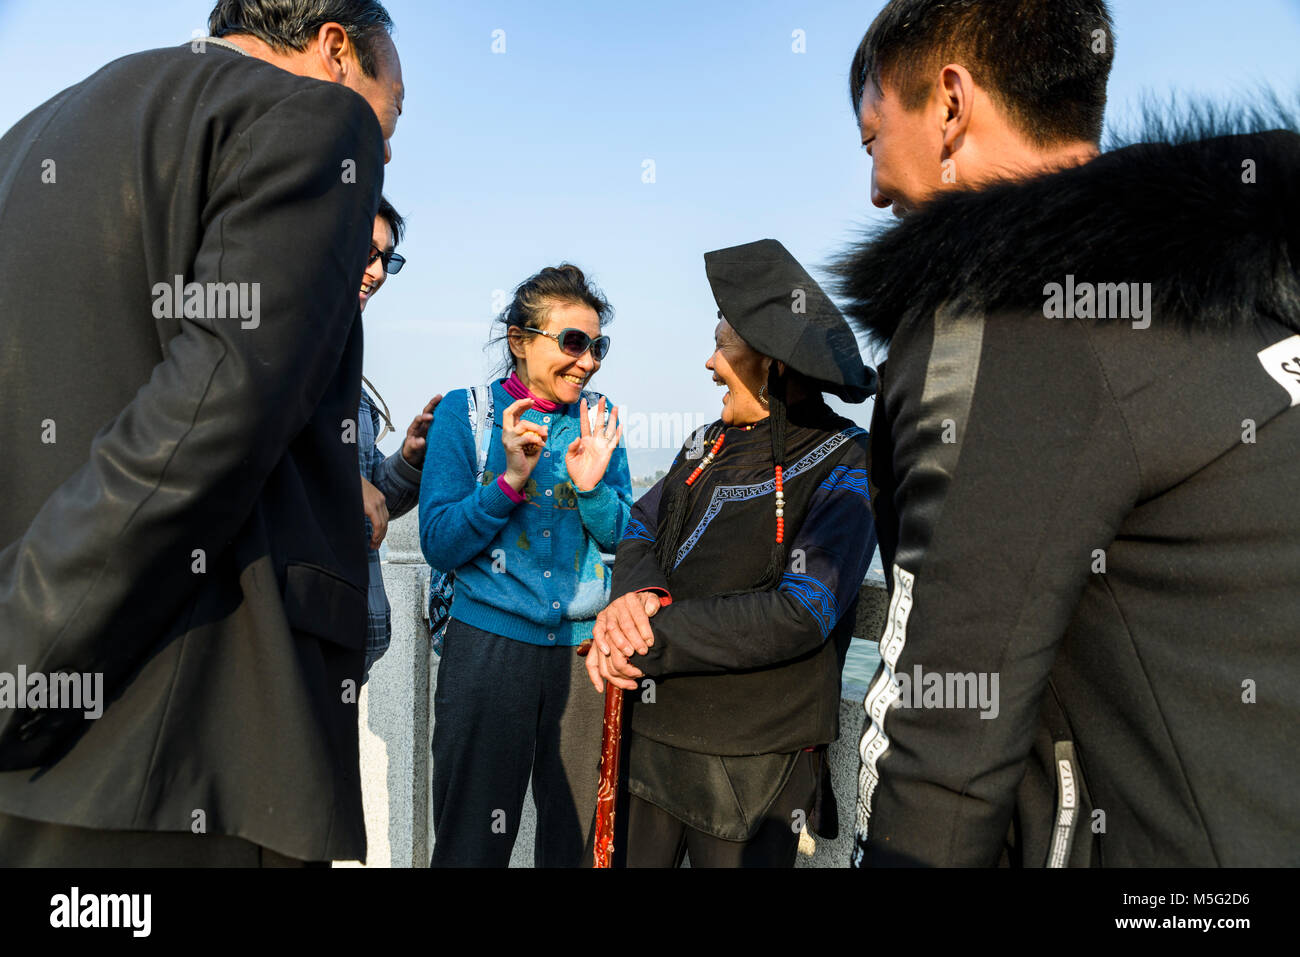 Touristische Dame fragte die Yi Frau ihres Alters zu erraten und sie vermutete 42. Die Dame war froh, dass zu hören, weil sie 60 war. Stockfoto